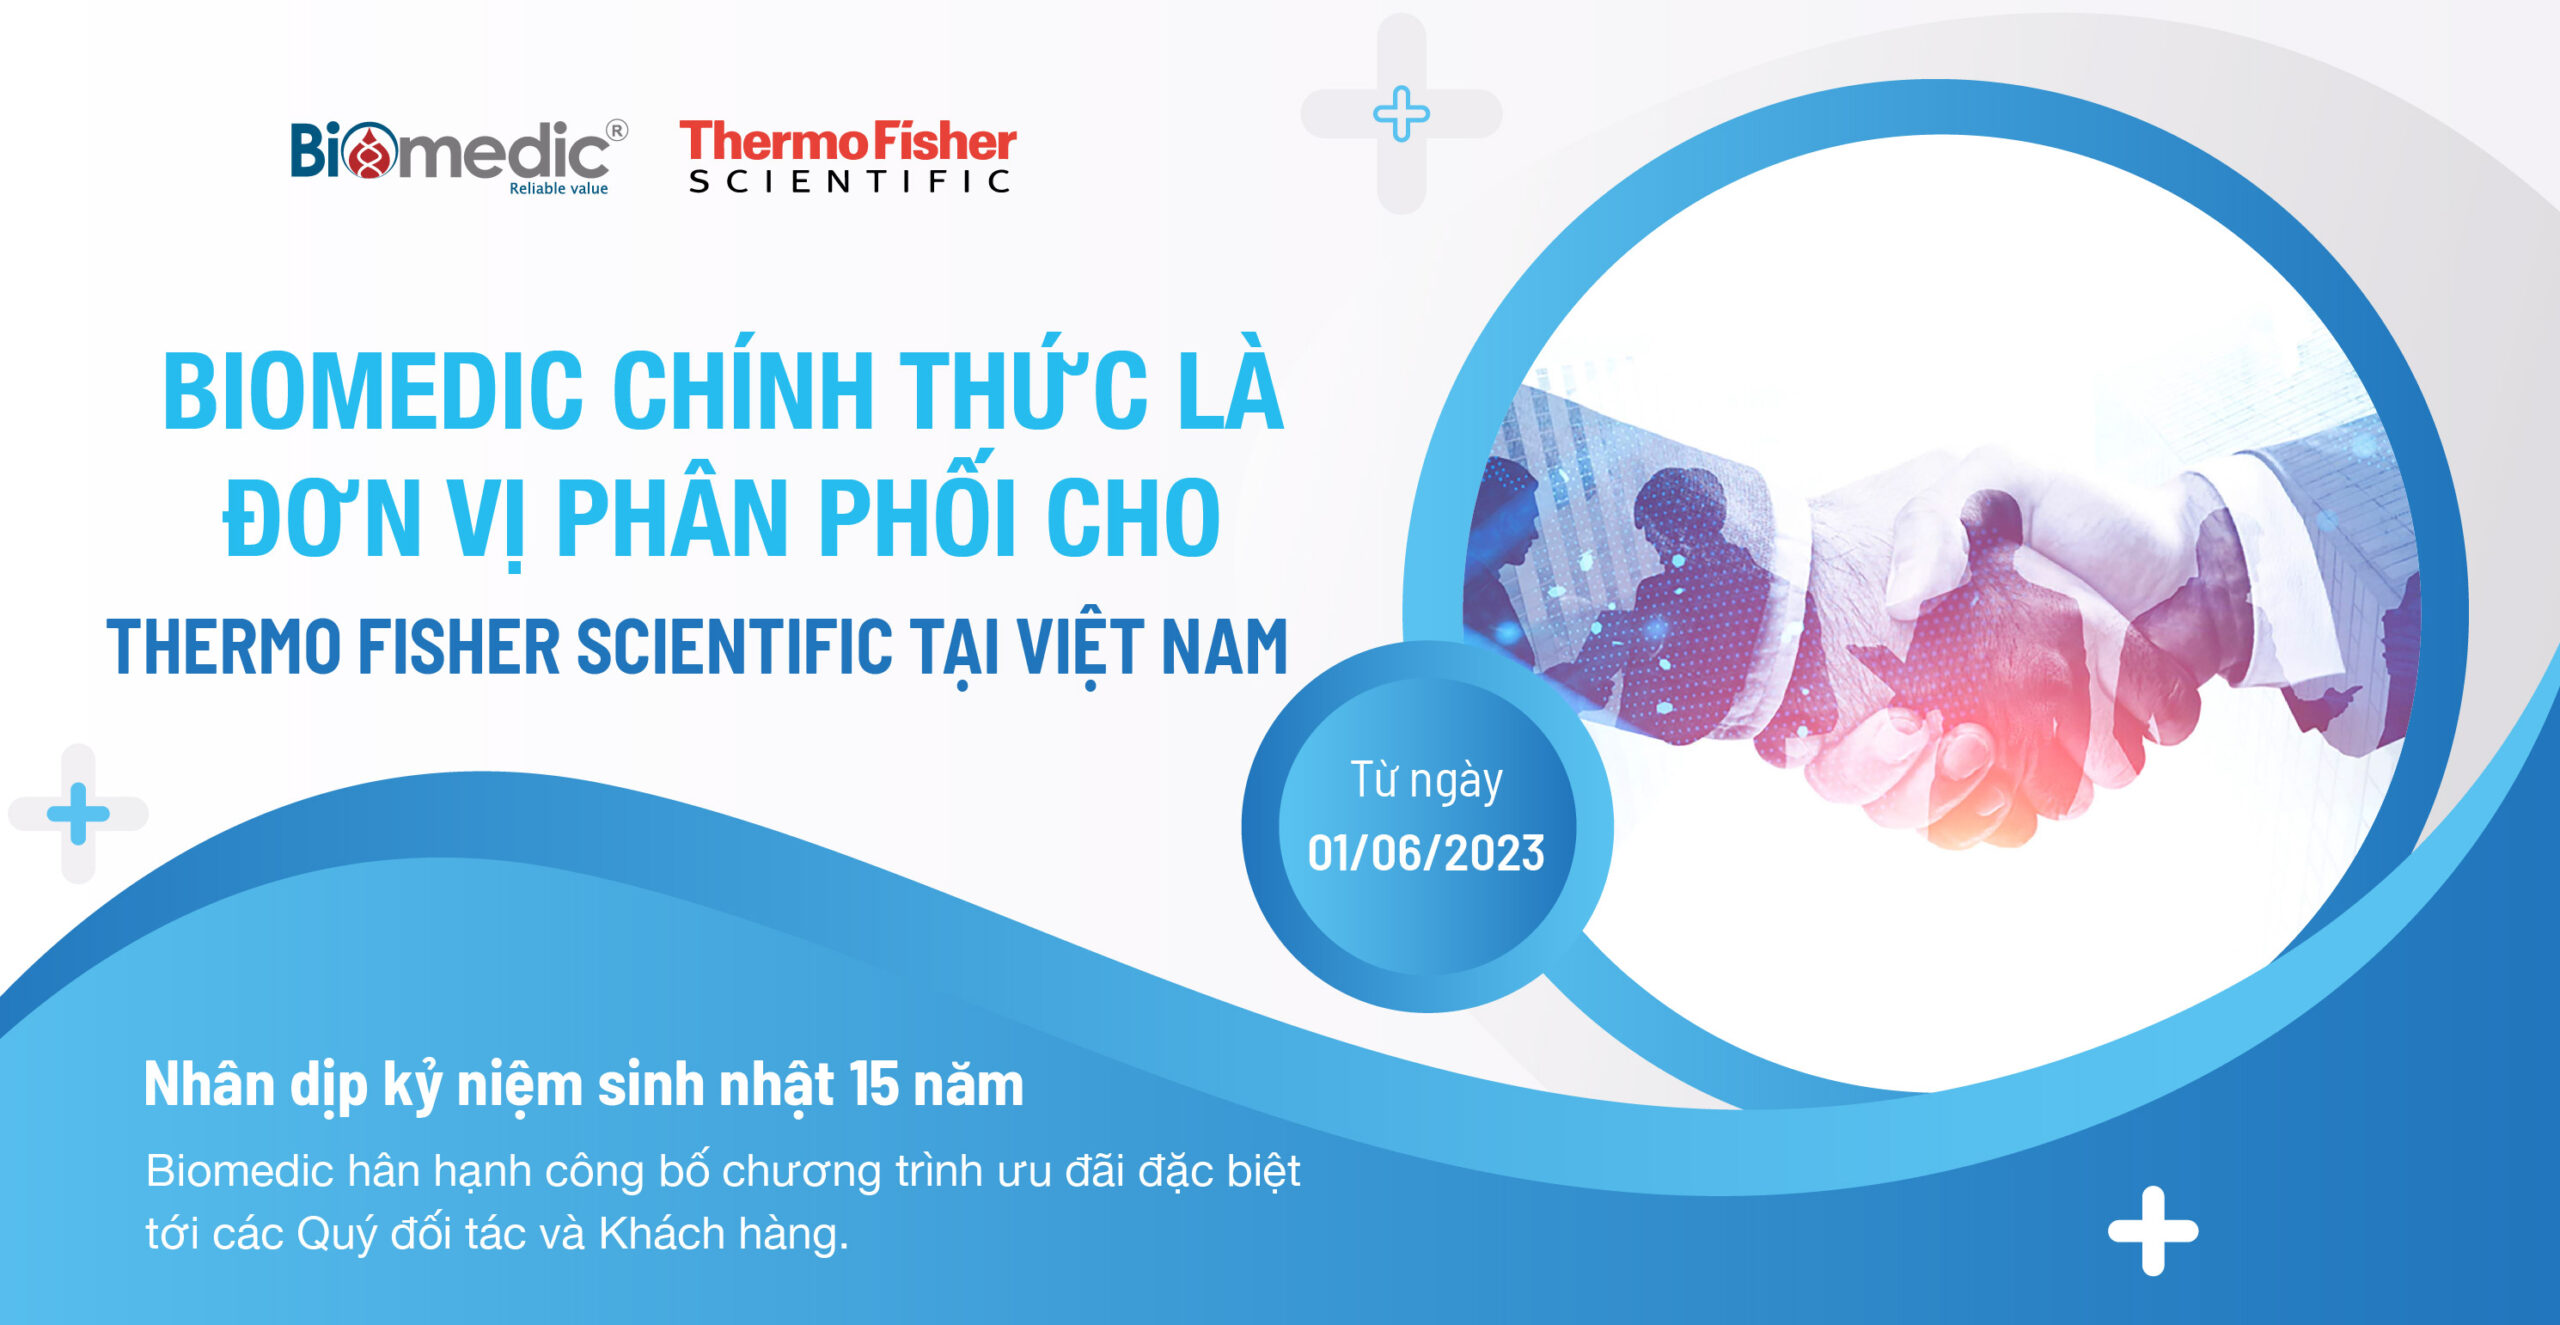 Biomedic chính thức là đơn vị phân phối cho Thermo Fisher Scientific tại Việt Nam